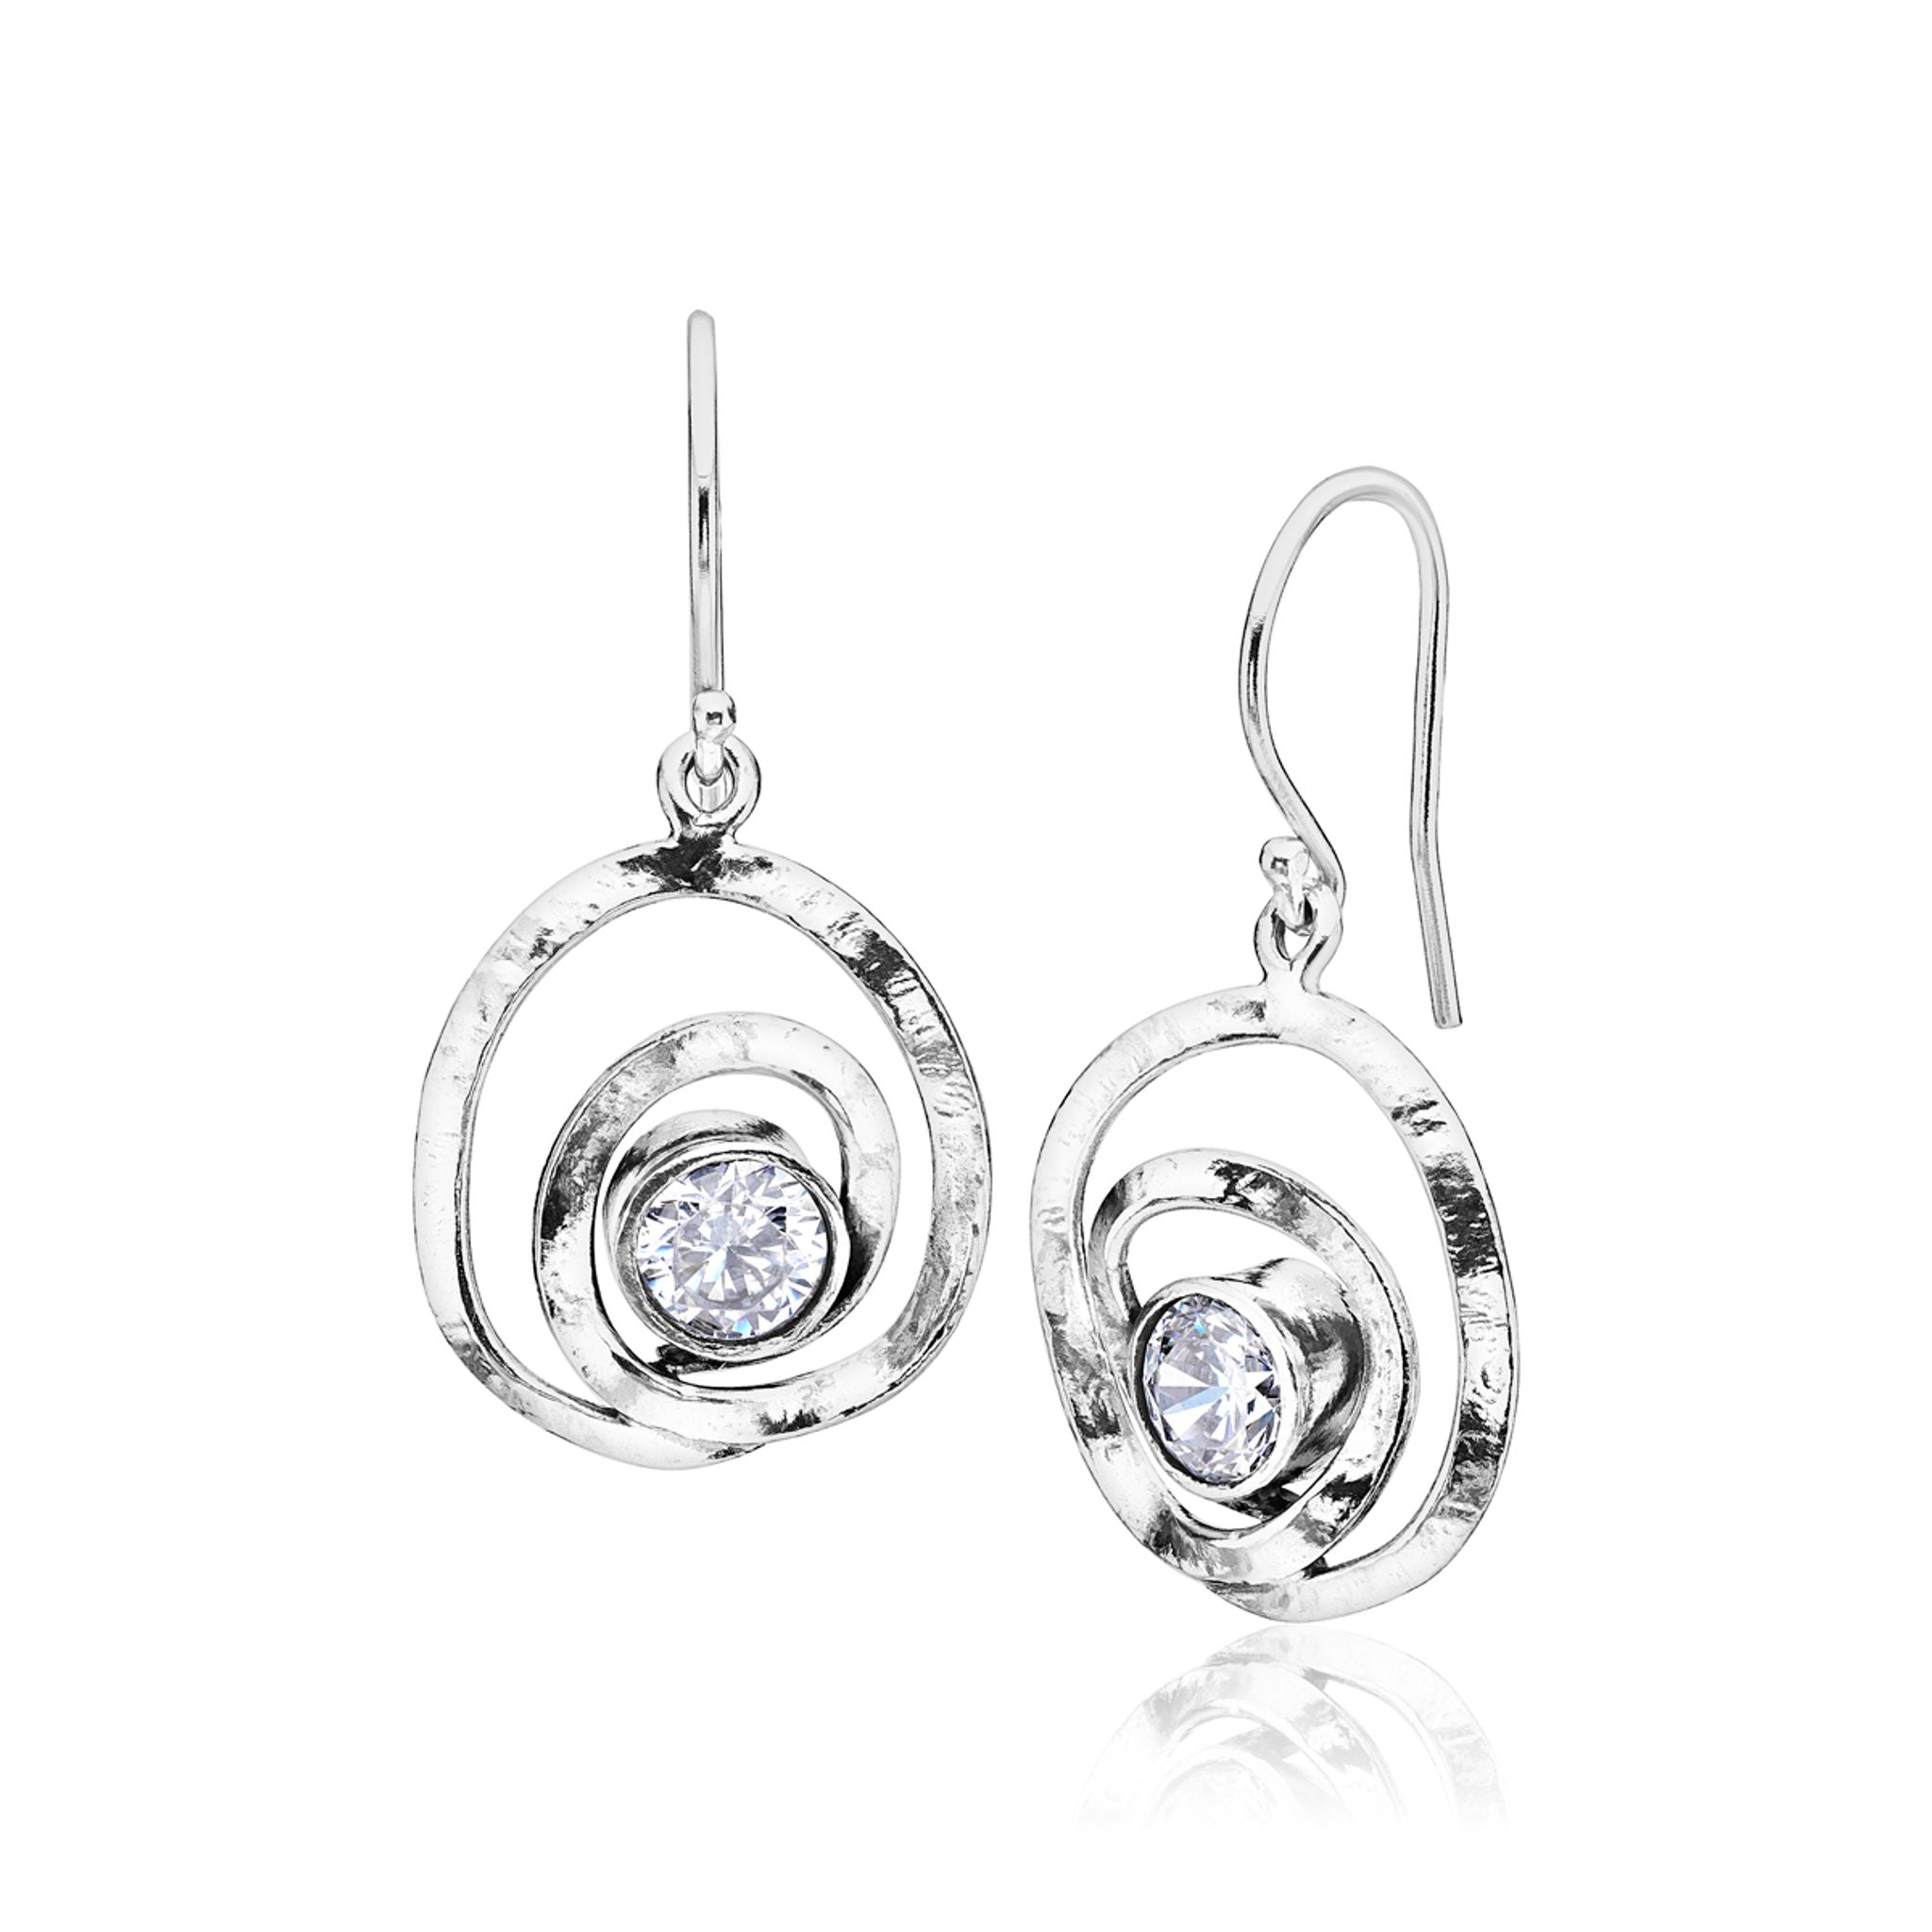 Artistic Sterling Silver CZ Dangle Earrings